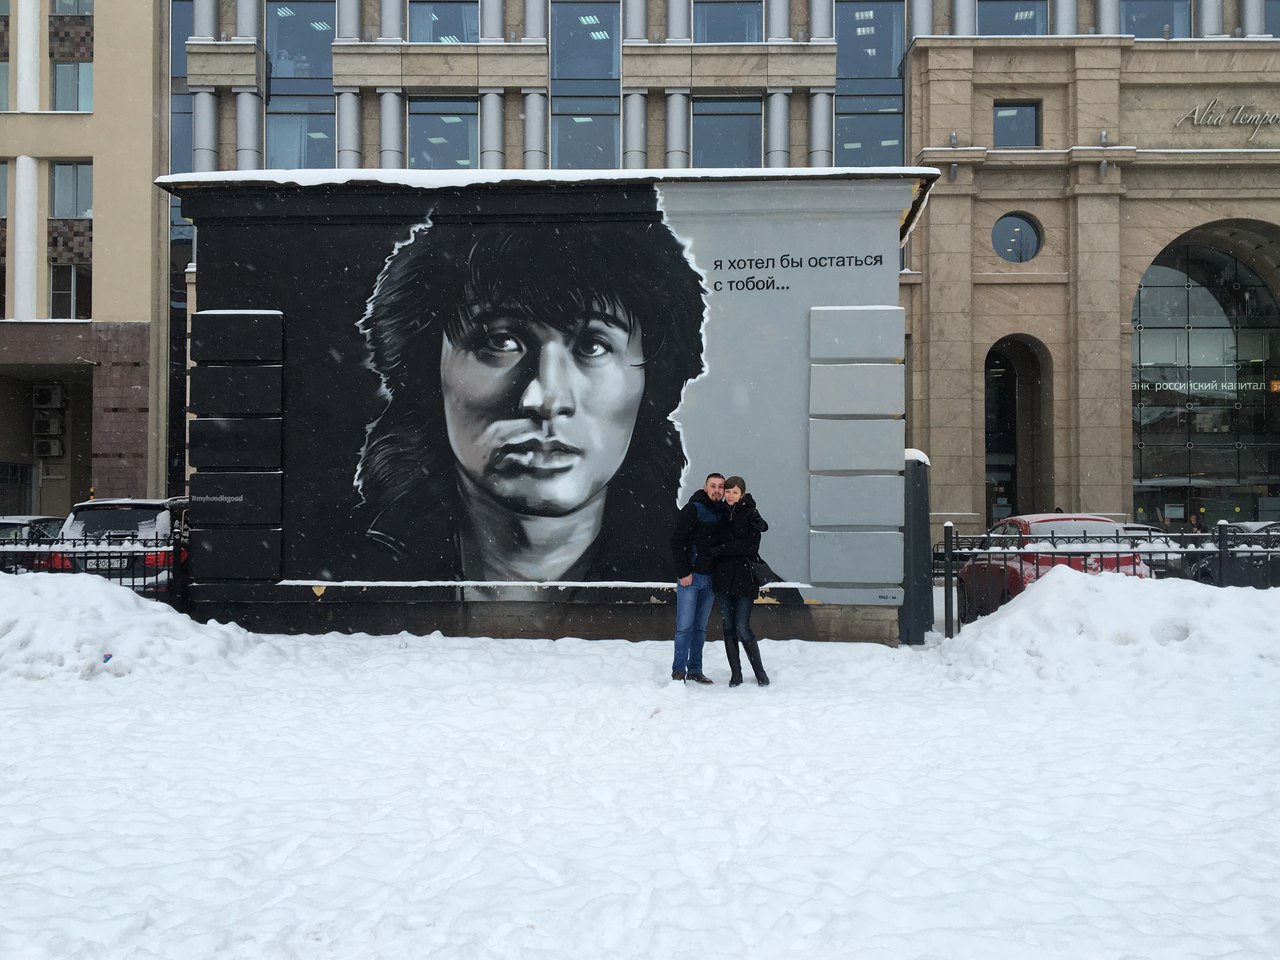 Вінничанин, що воює на боці ДНР, поїхав відпочивати в Санкт-Петербург (Фотофакт)